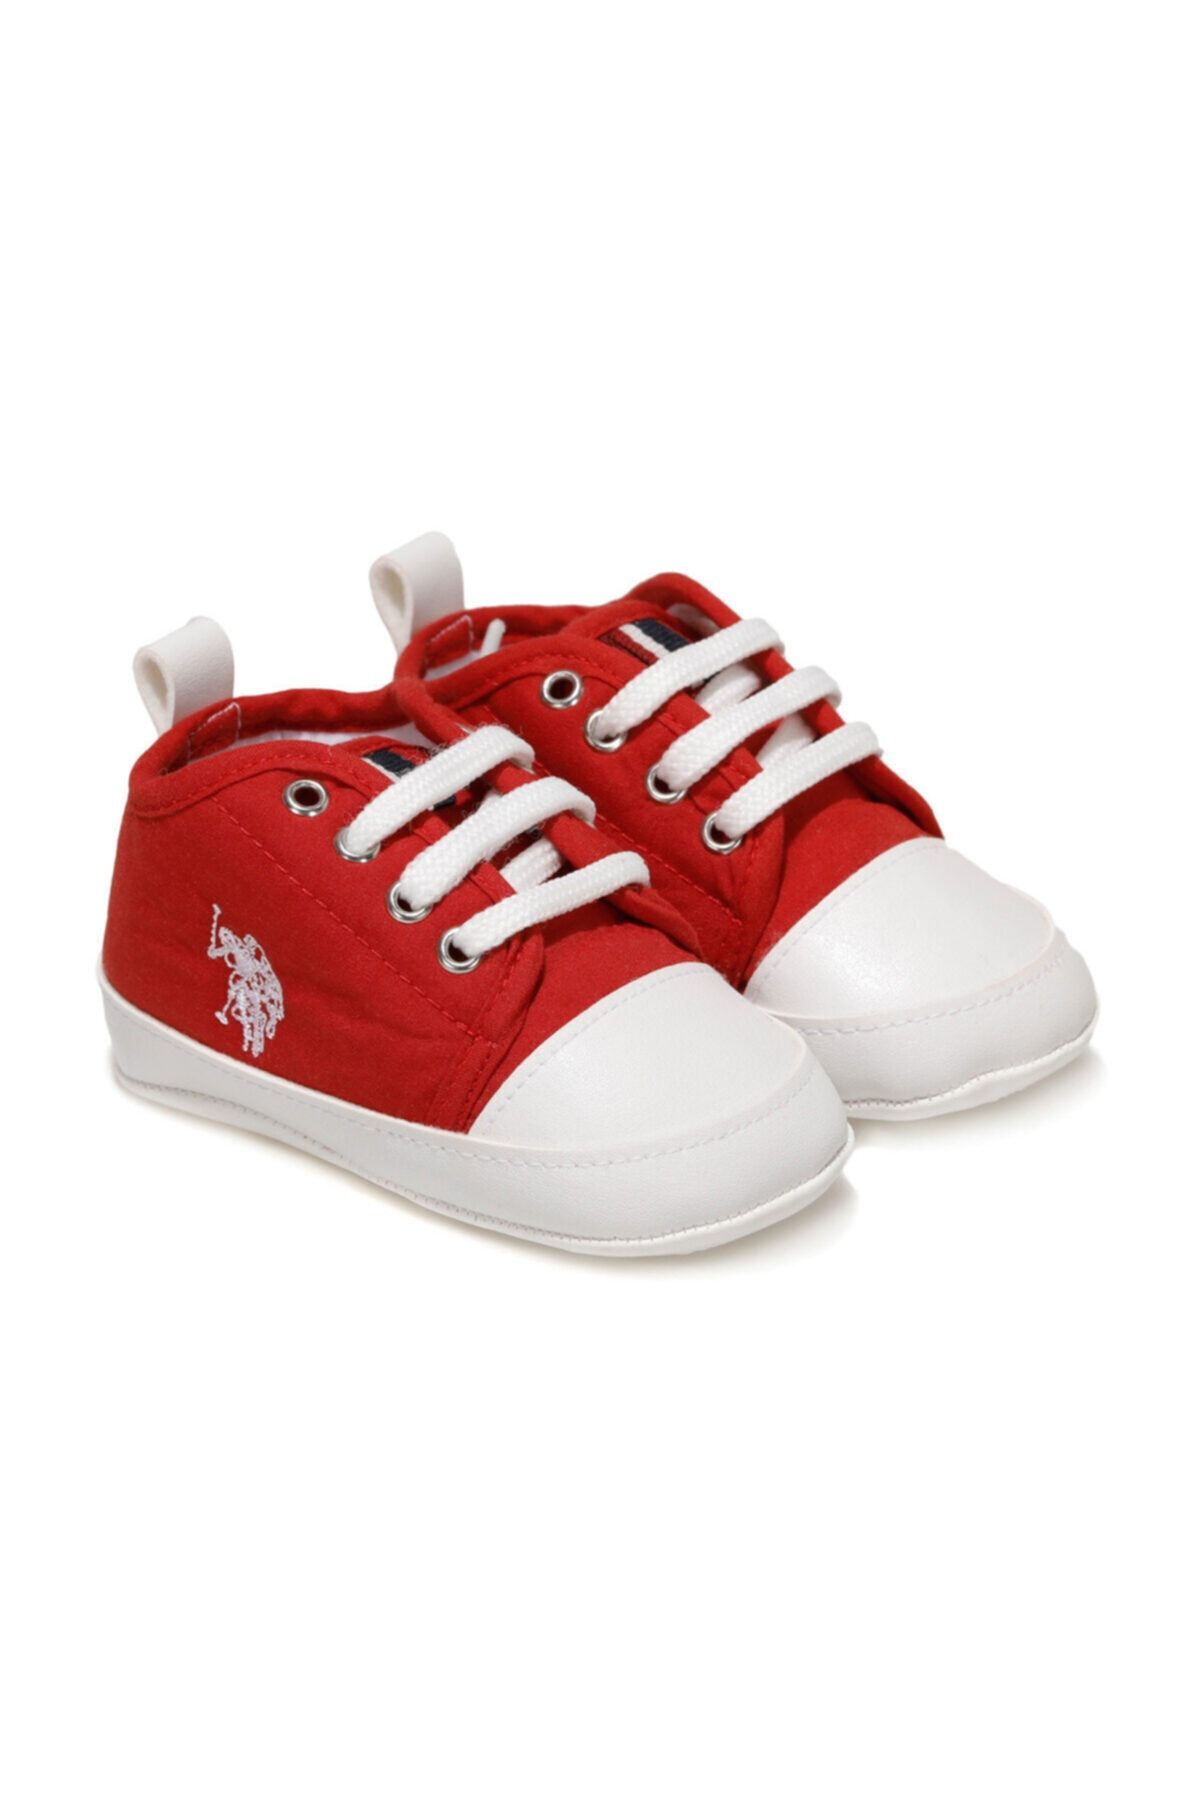 U.S. Polo Assn. MICKY 1FX Kırmızı Kız Çocuk Yürüyüş Ayakkabısı 100911036